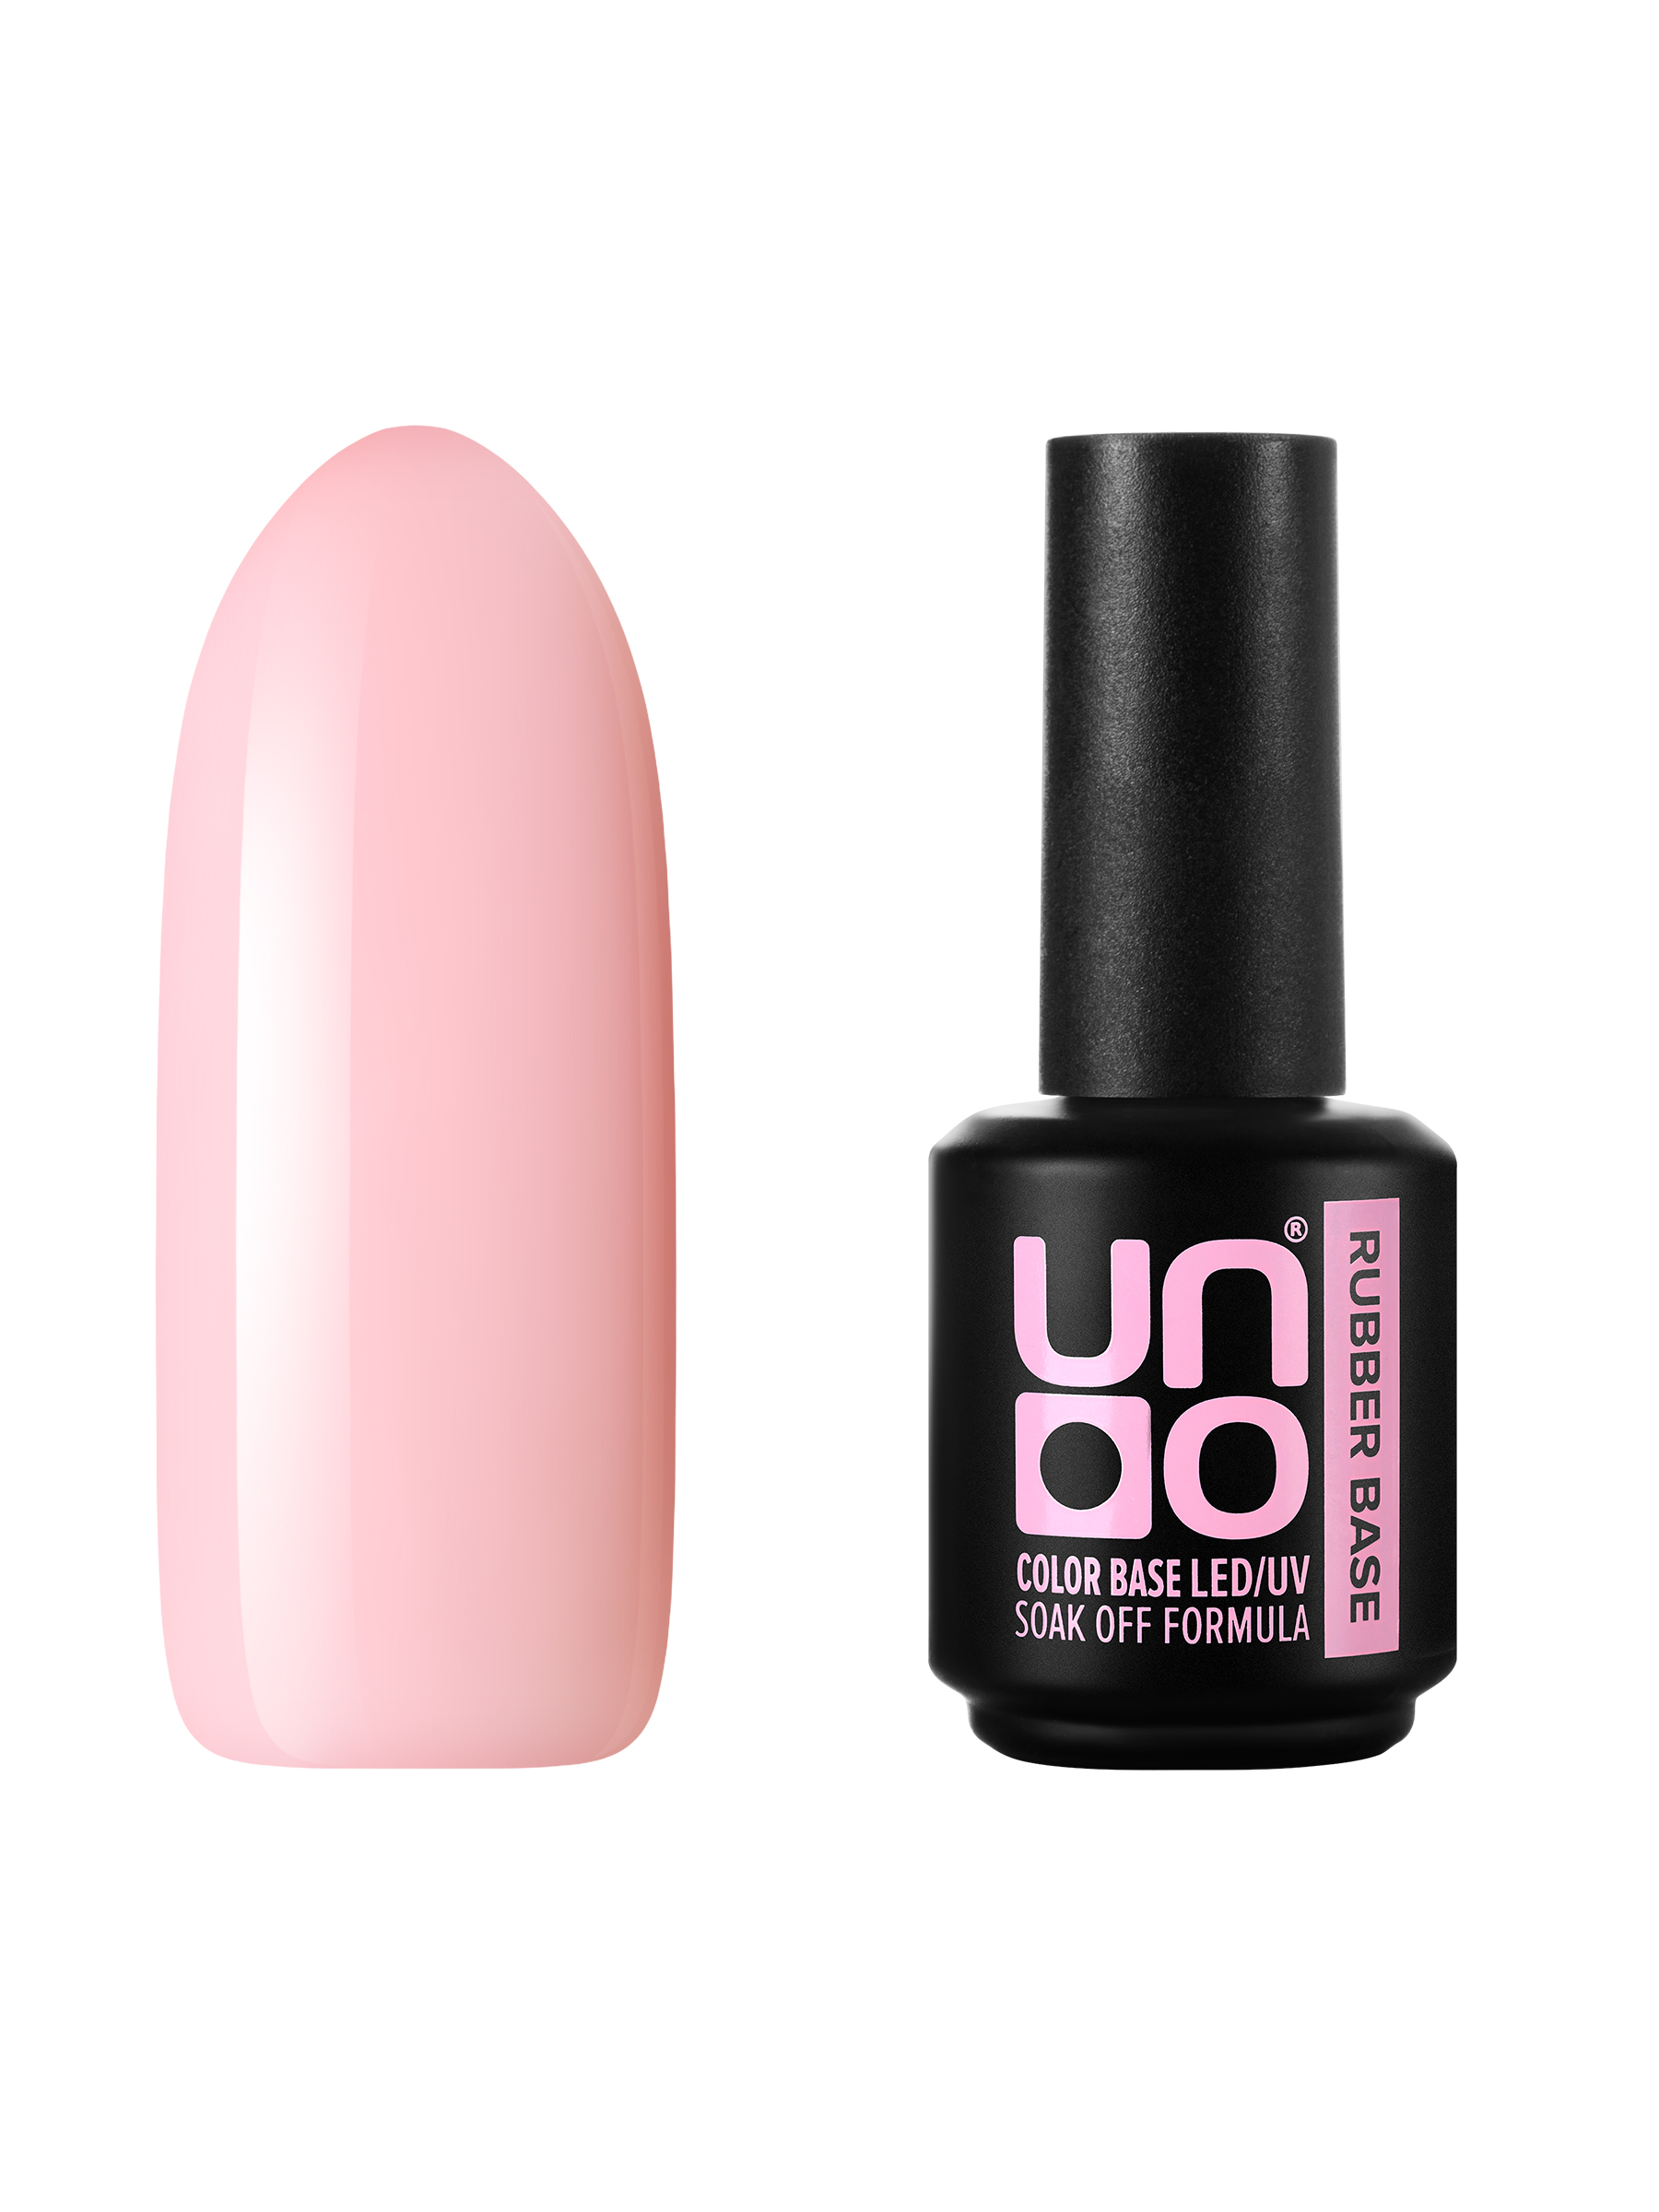 Камуфлирующая база для ногтей UNO цветная мягкая основа под гель-лак, нюд, розовая, 12 г спутник сестры милосердия